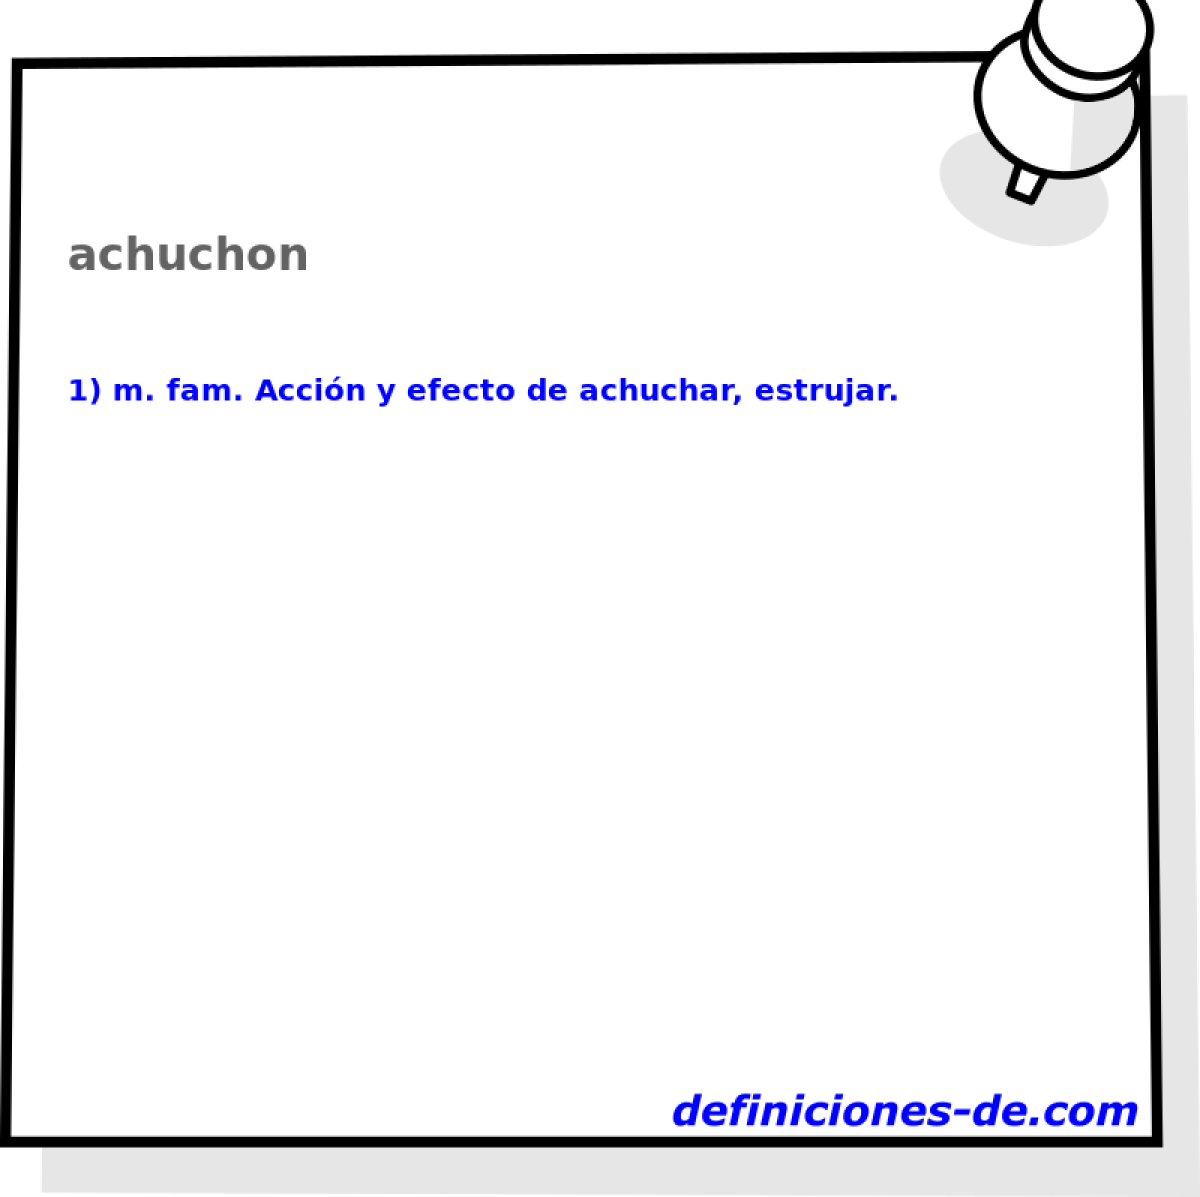 achuchon 